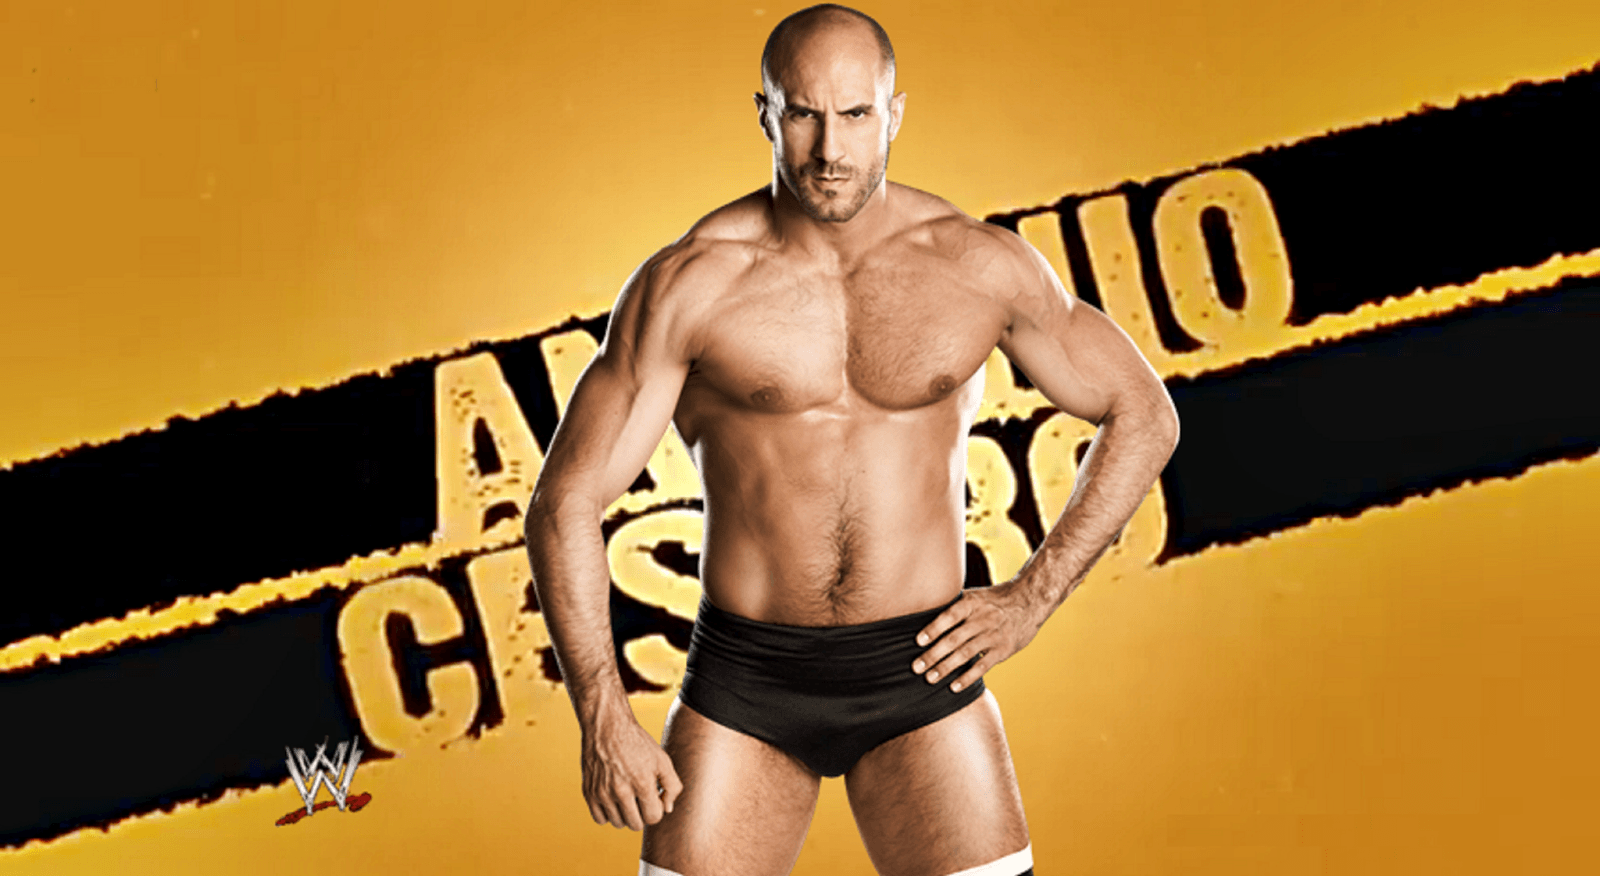 WWE Antonio Cesaro Wallpaper HD Picture. Live HD Wallpaper HQ